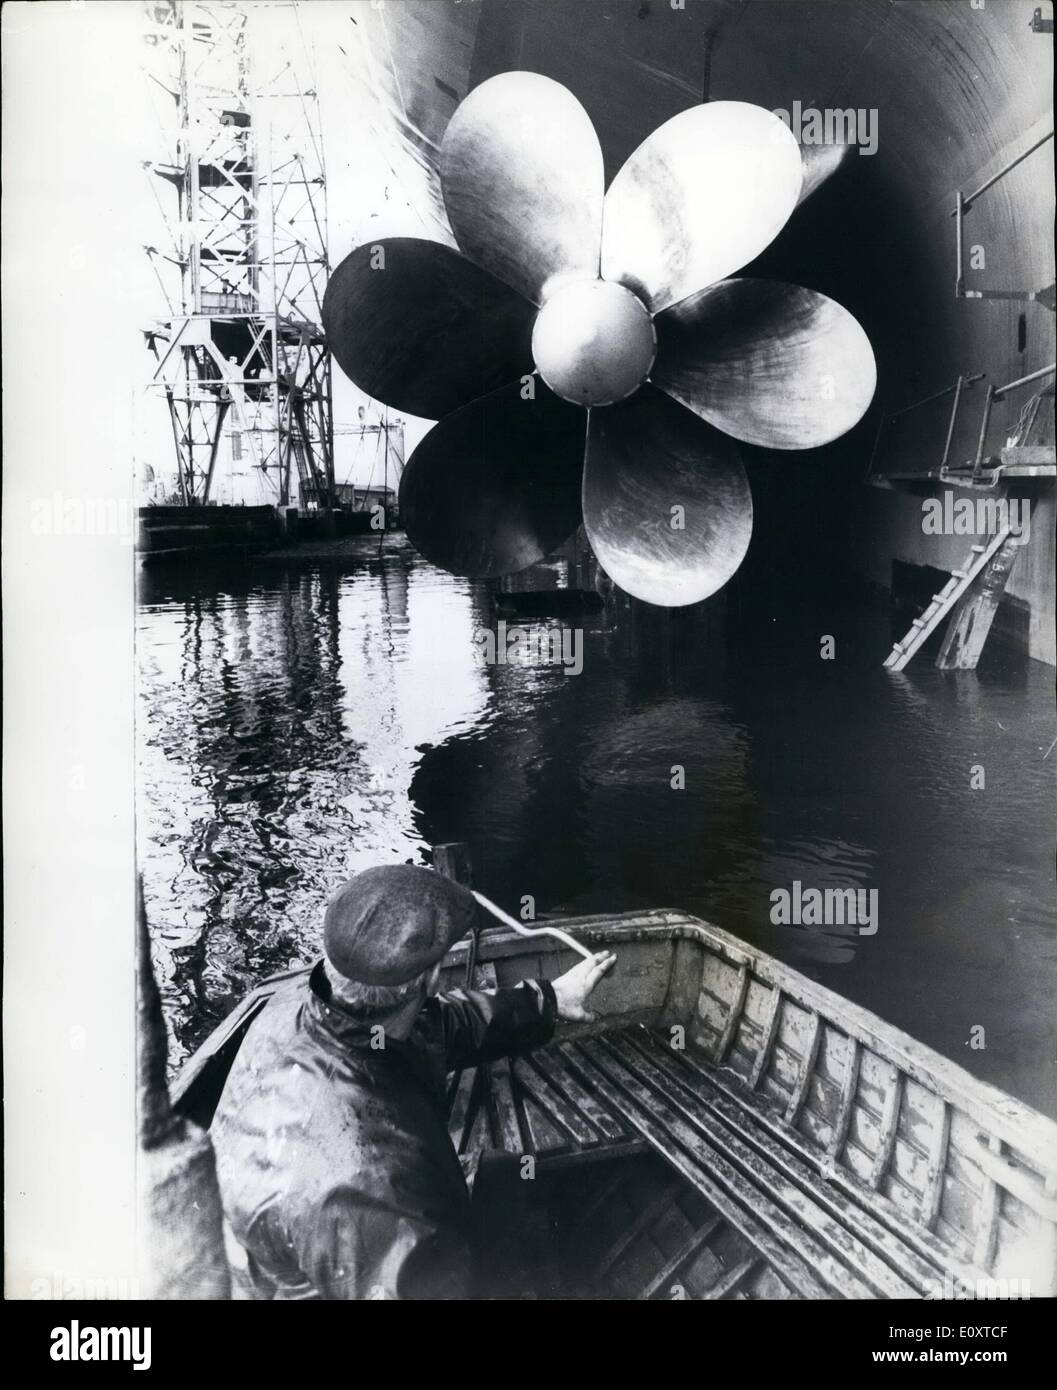 Sept. 09, 1967 - Q4 Liner bereit für den Start von Königin.: der £30 million Cunard Liner Q4 Liner wird von HM The Queen am 20. September bei John Brown Shipnard, Clydebank gestartet werden. Mehr als 30.000 Menschen, darunter auch Arbeitnehmer, die geholfen haben, das Schiff zu bauen wurden auf der Startschuss-Zeremonie eingeladen. Foto zeigt einen der sechs-Klinge Doppelschnecken, 19 ft. Durchmesser und einem Gewicht von über 30 Tonnen, abgebildet bei John Brown Werft gestern. Stockfoto